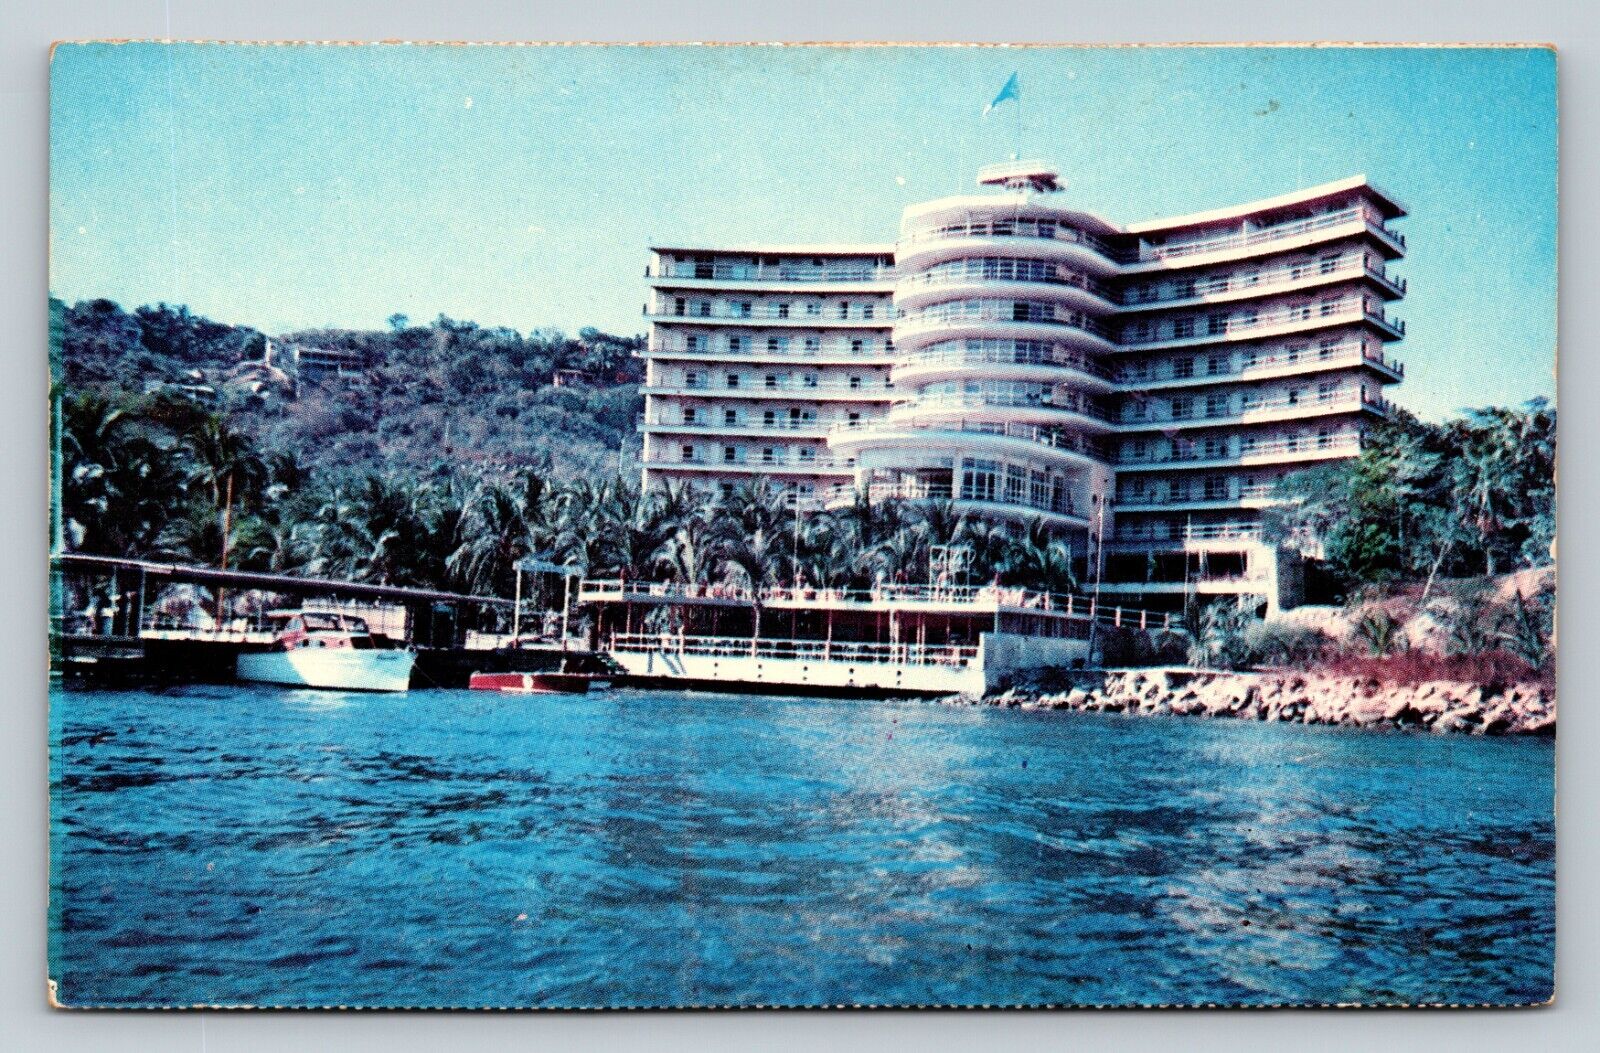 Beautiful Acapulco Mexico Hotel Club De Pesca VINTAGE Postcard